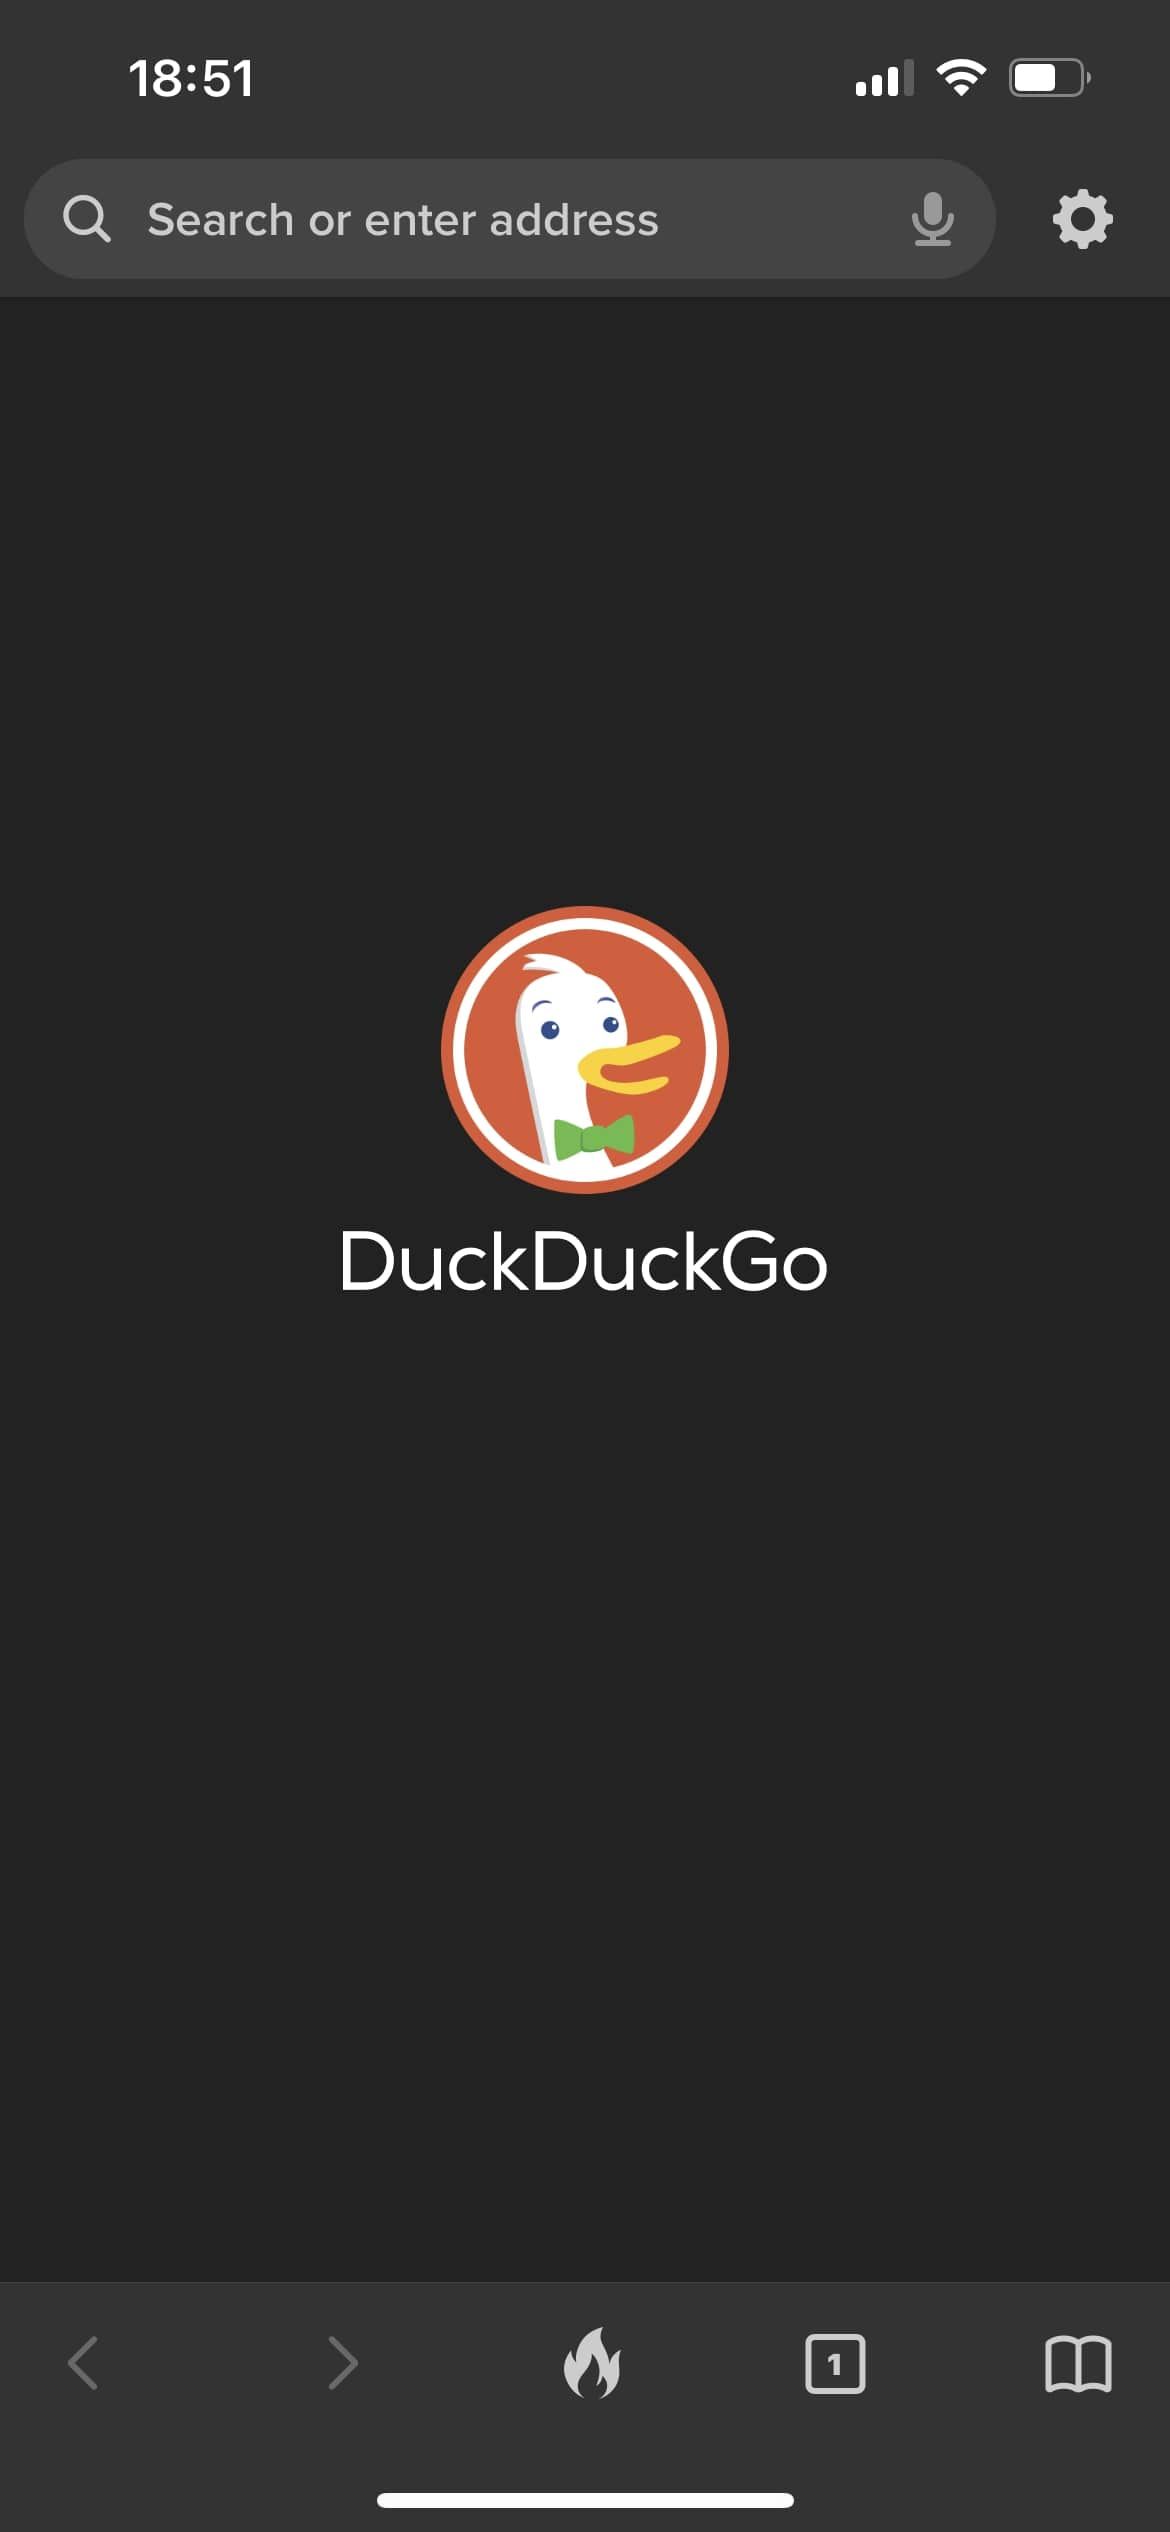 DuckDuckGo IOS browser